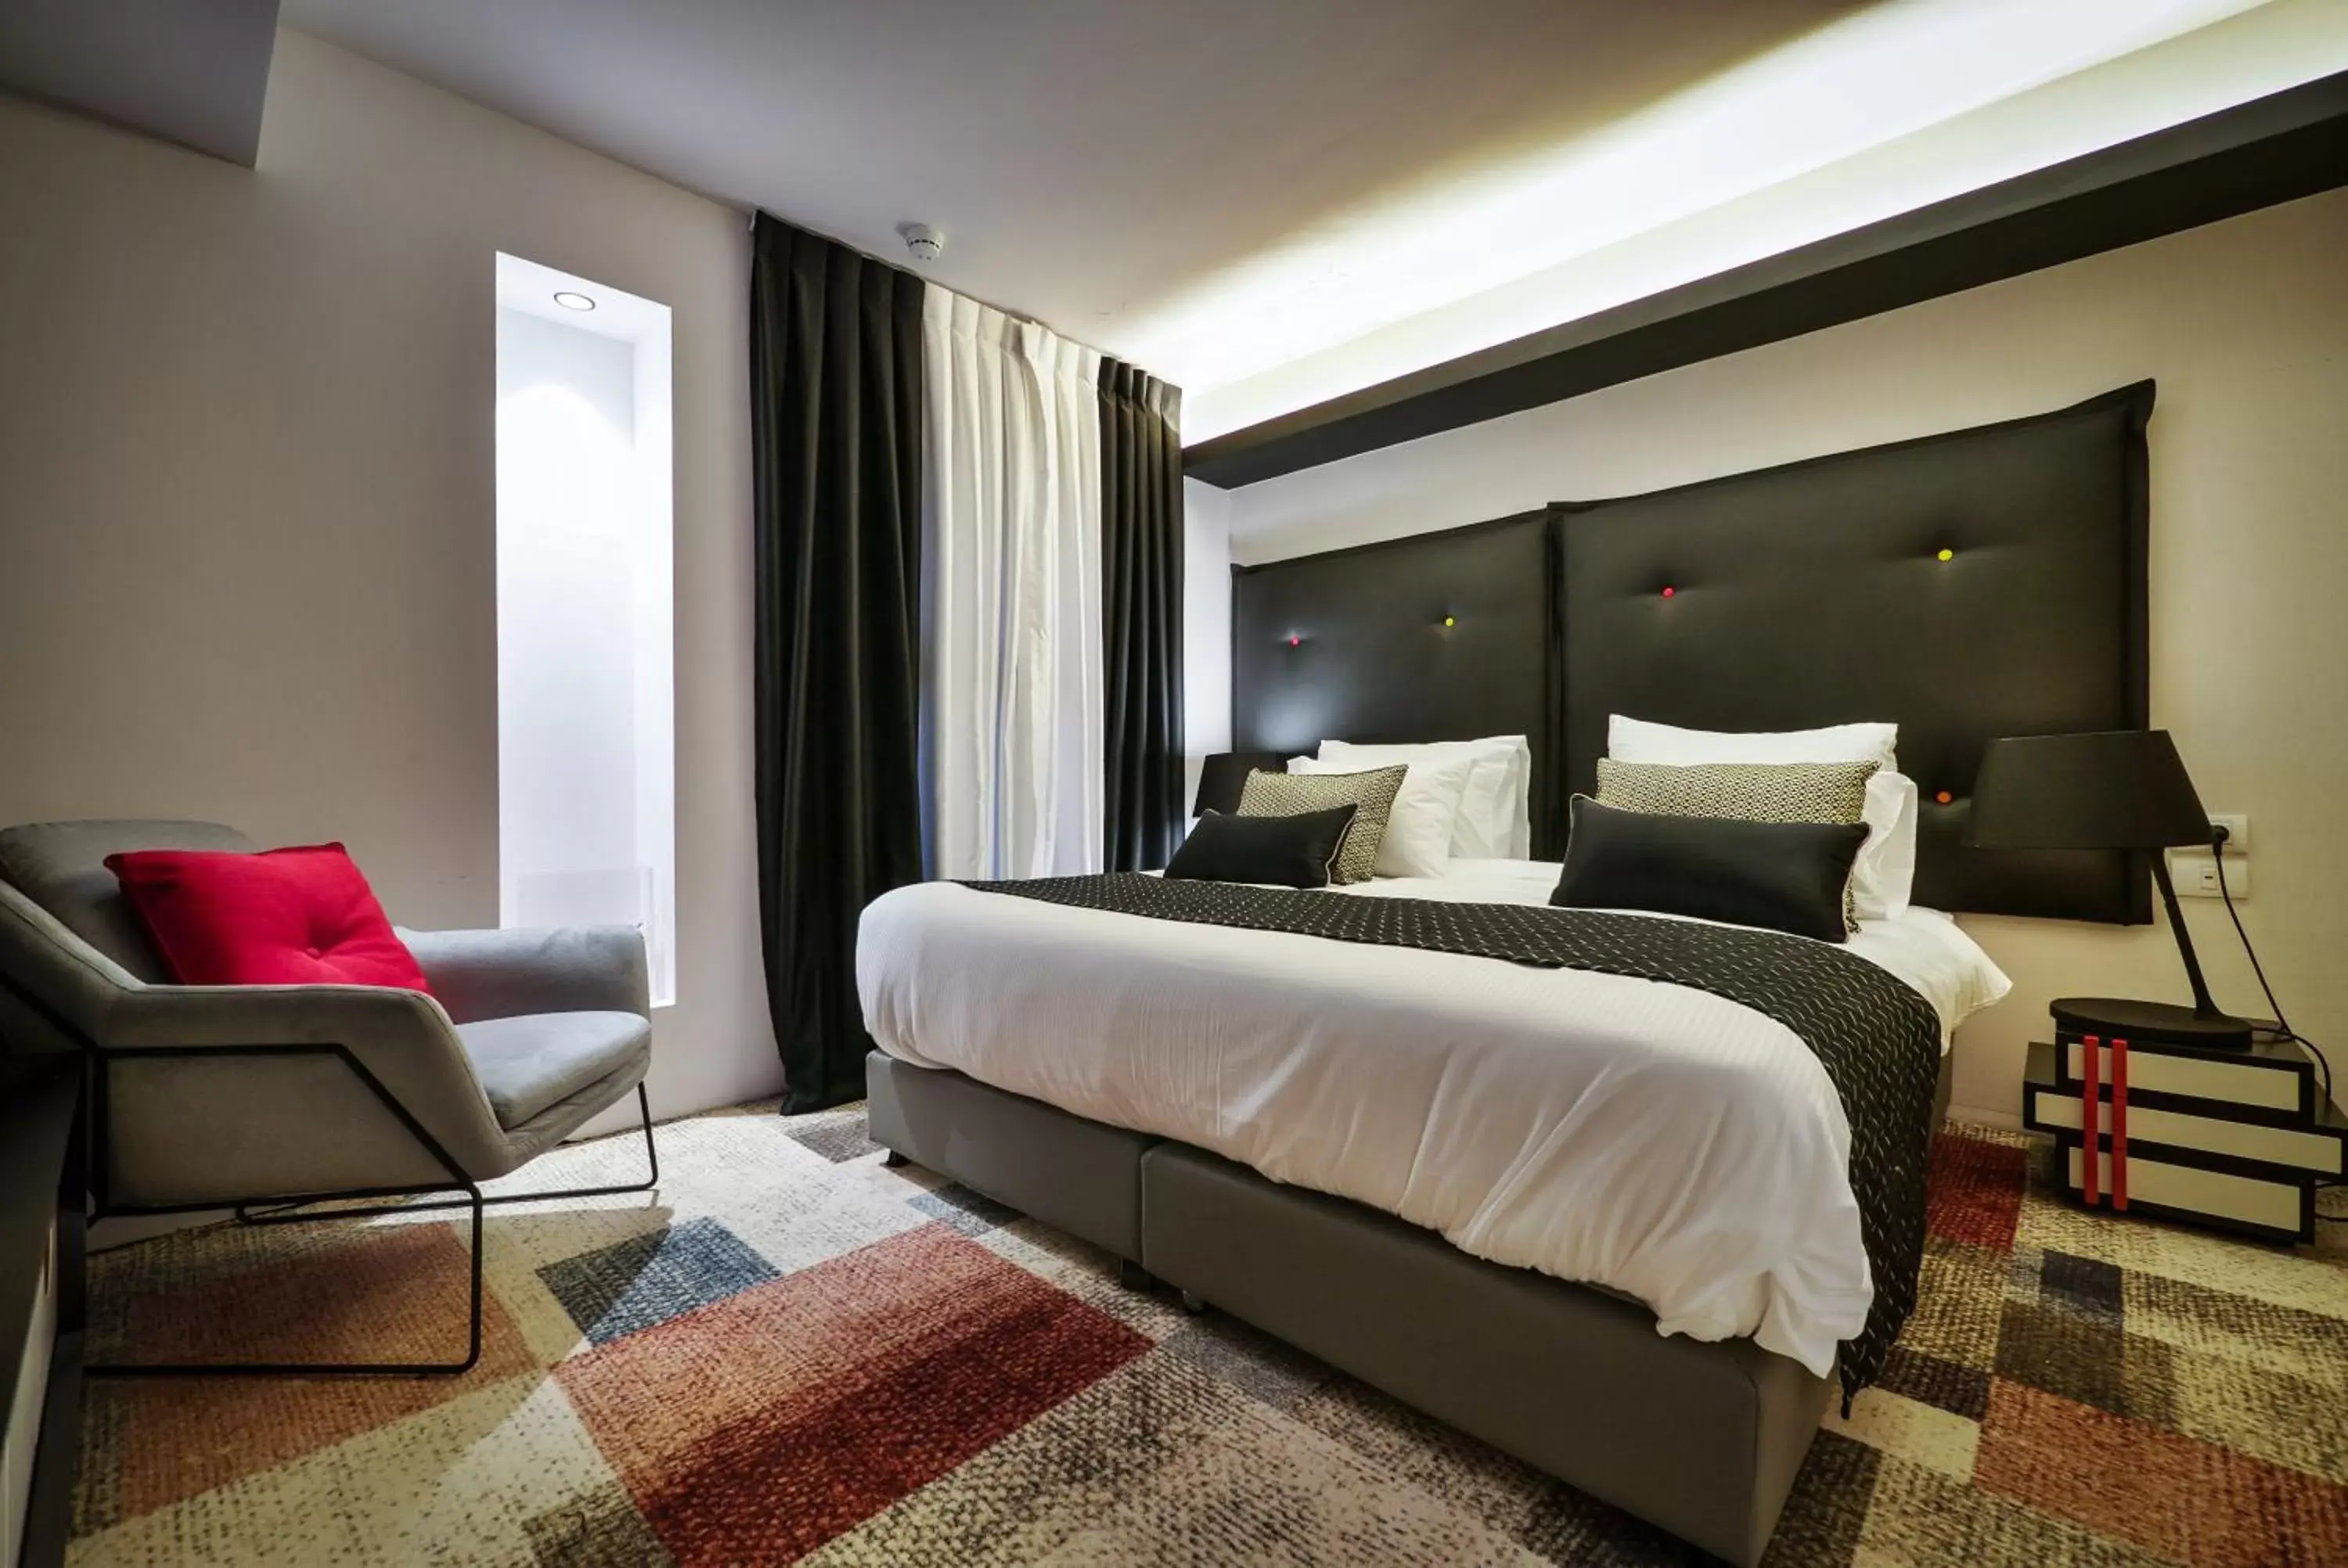 Bedroom, Bed in 21st Floor Hotel